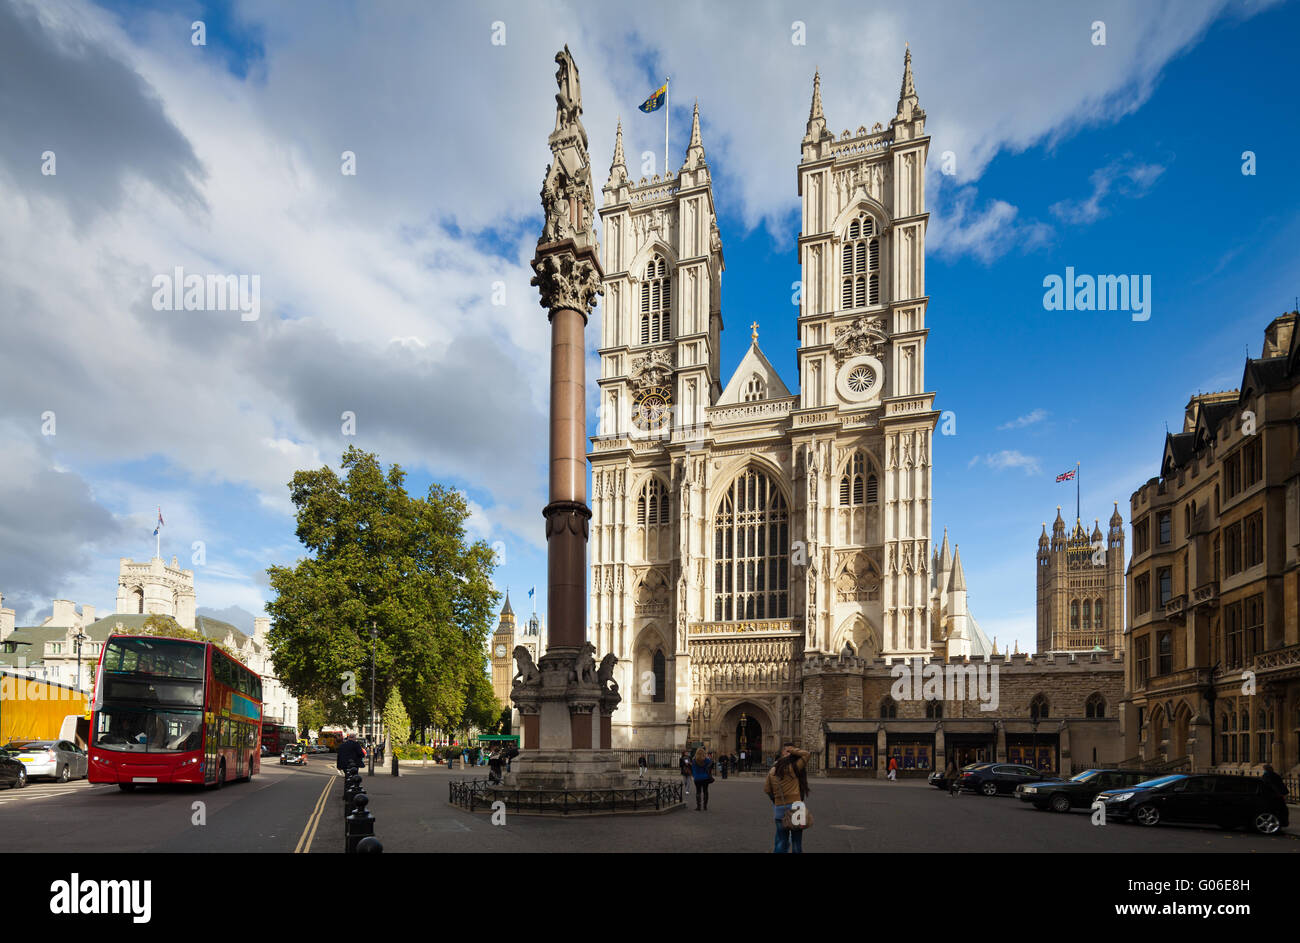 Façade de l'abbaye de Westminster lors d'une journée ensoleillée. London, UK Banque D'Images